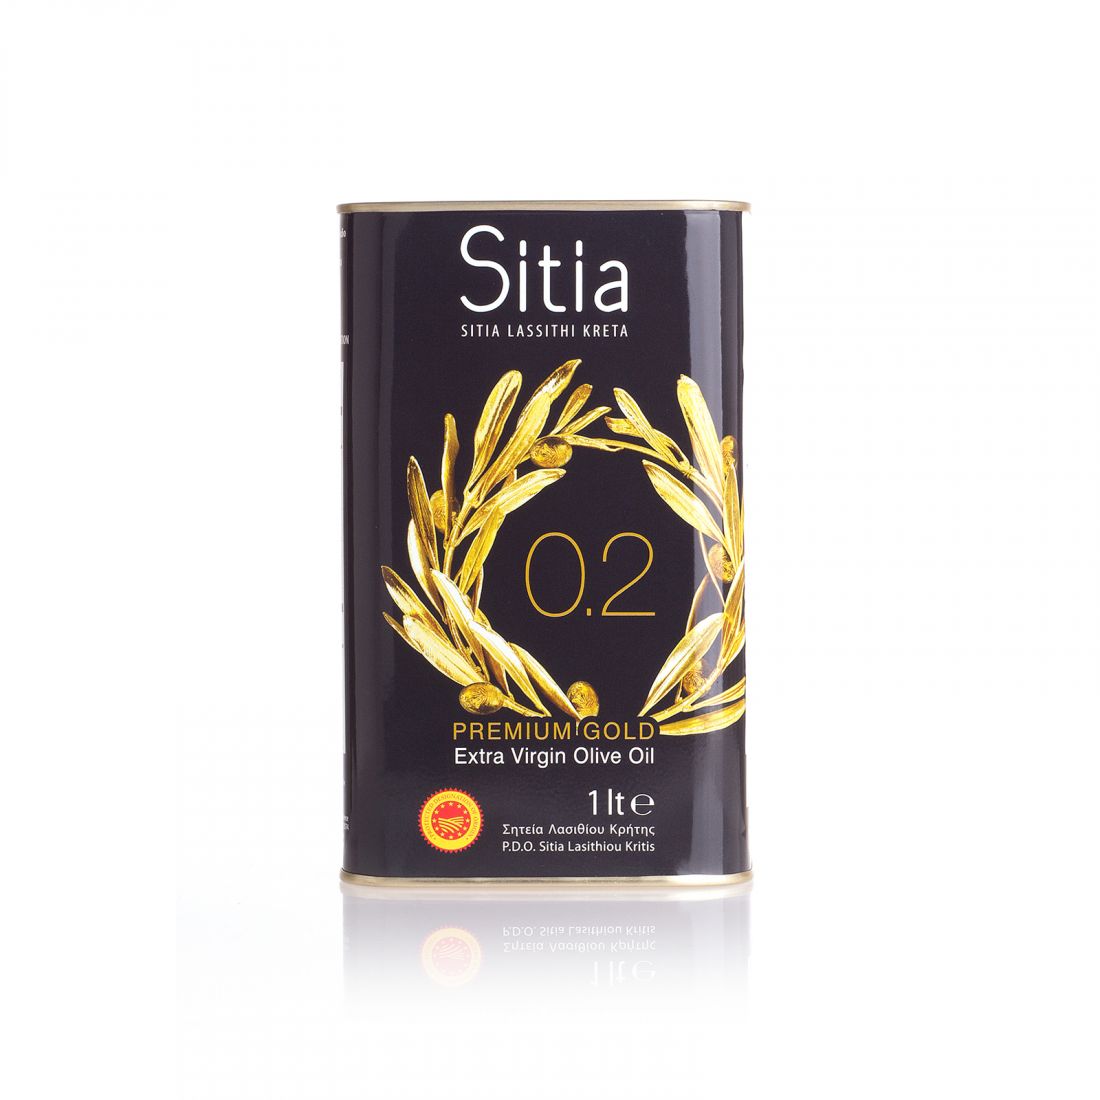 Оливковое масло SITIA Premium Gold - 1 л 0.2 экстра вирджин PDO жесть